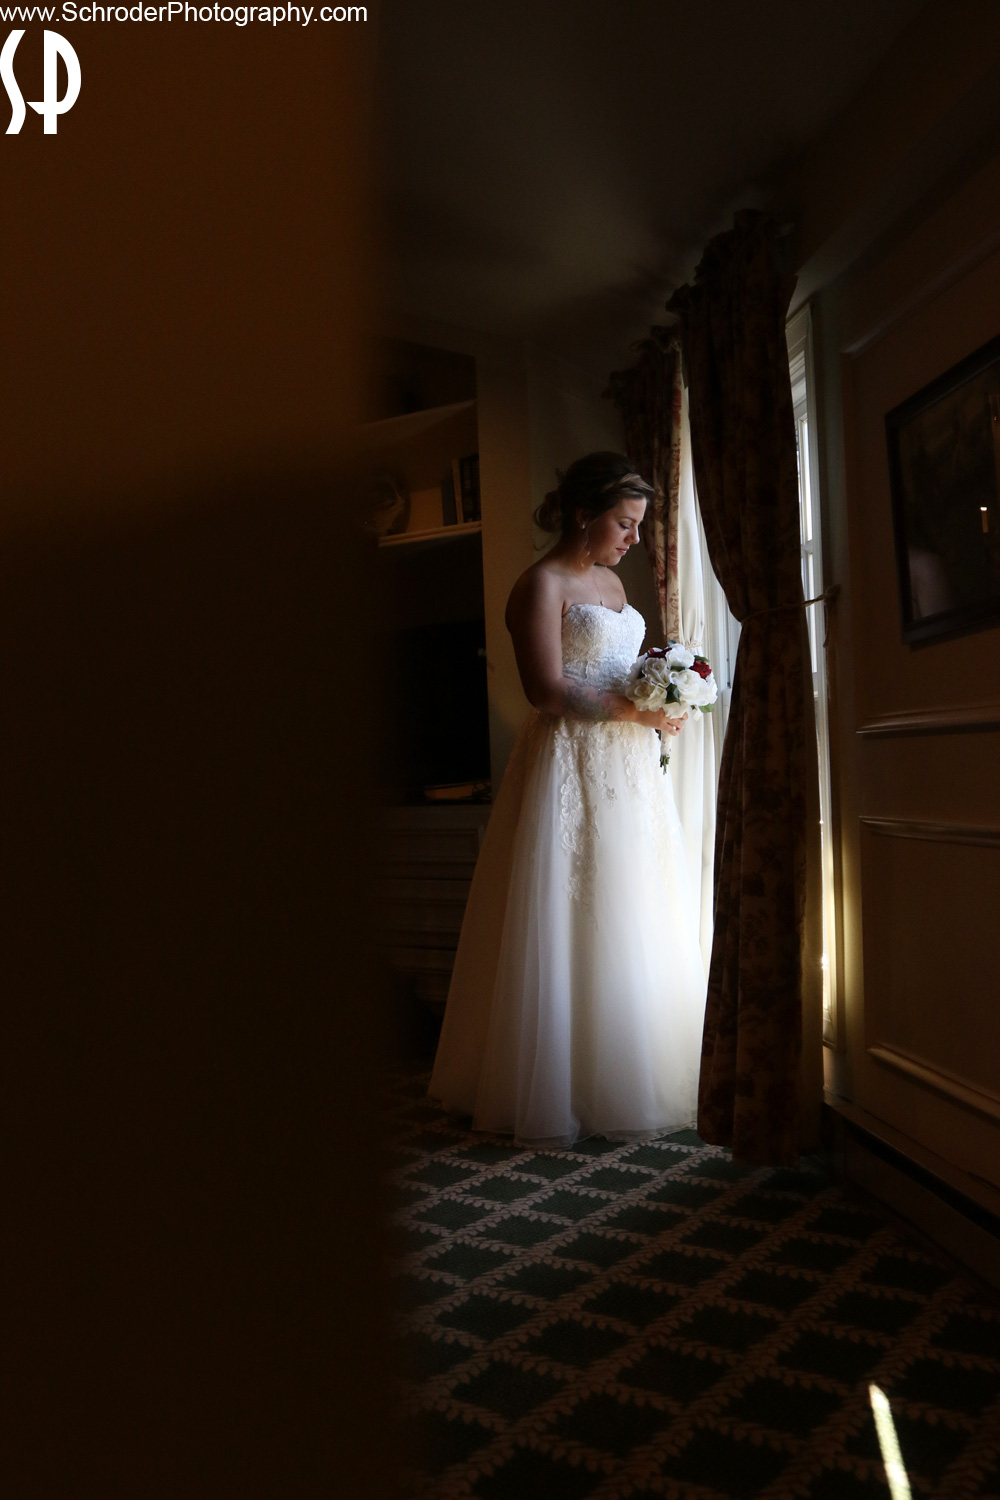 Bride by window